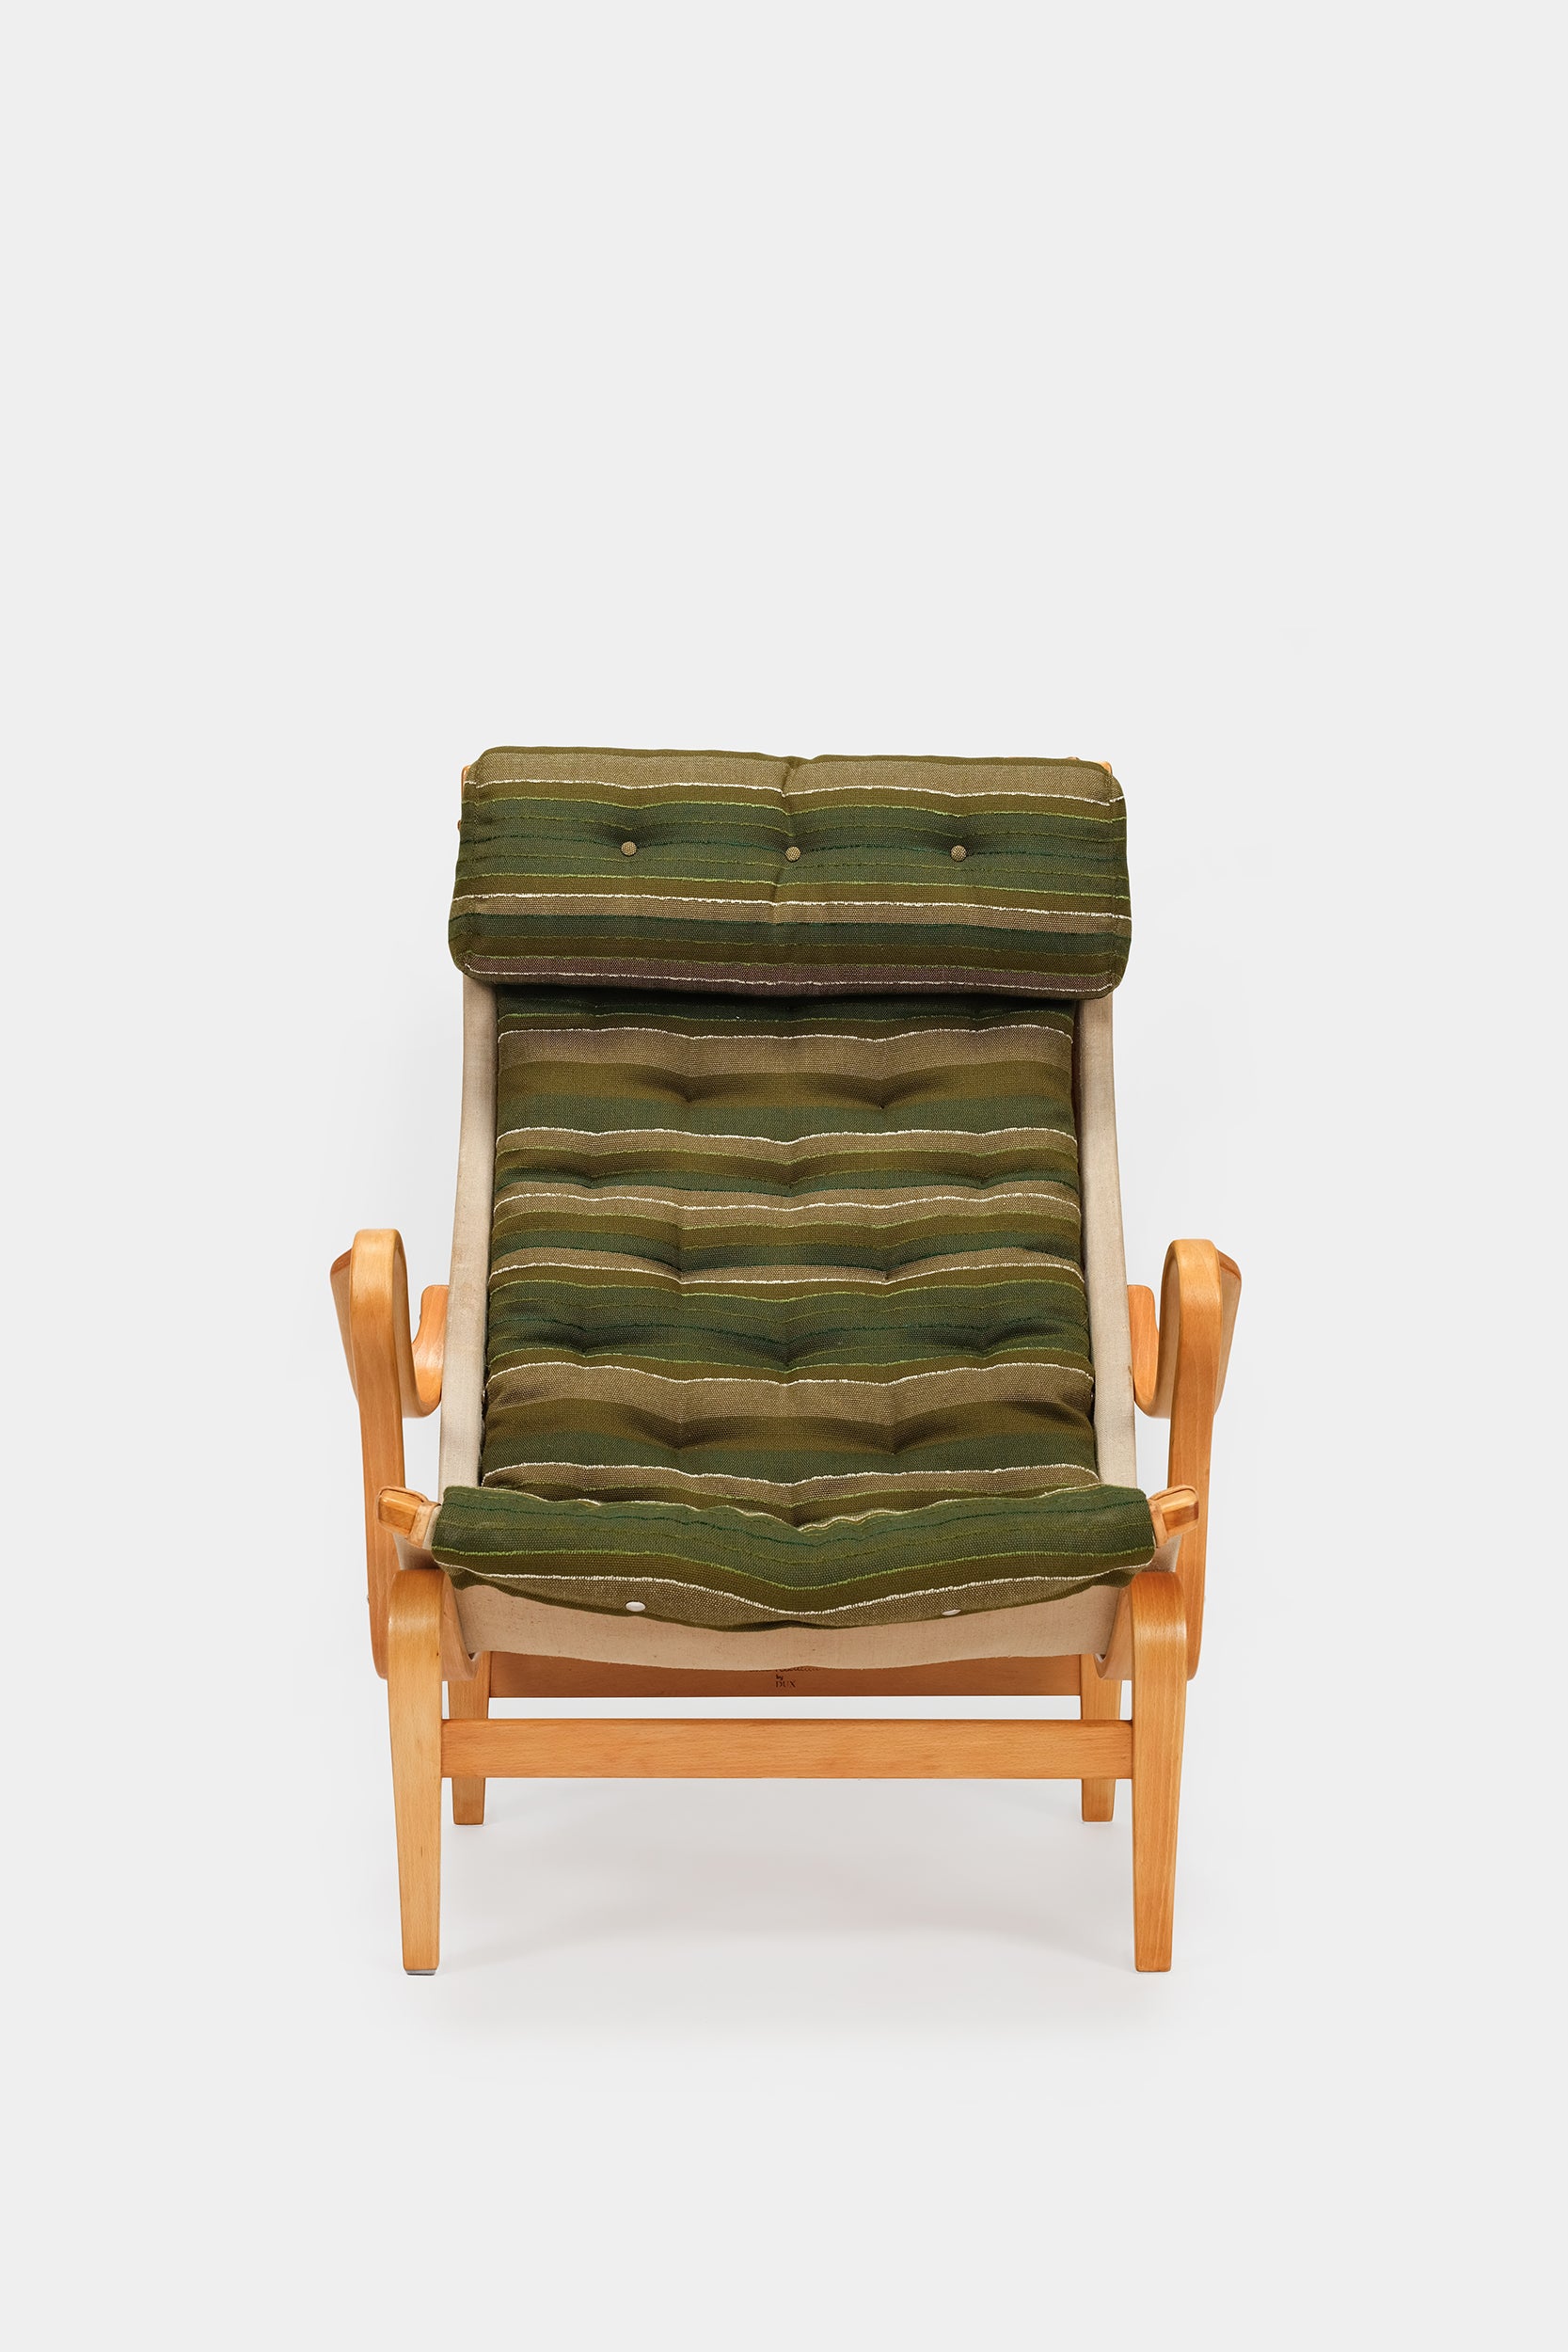 Bruno Mathsson, Lounge Chair 'Pernilla', Dux, 60s